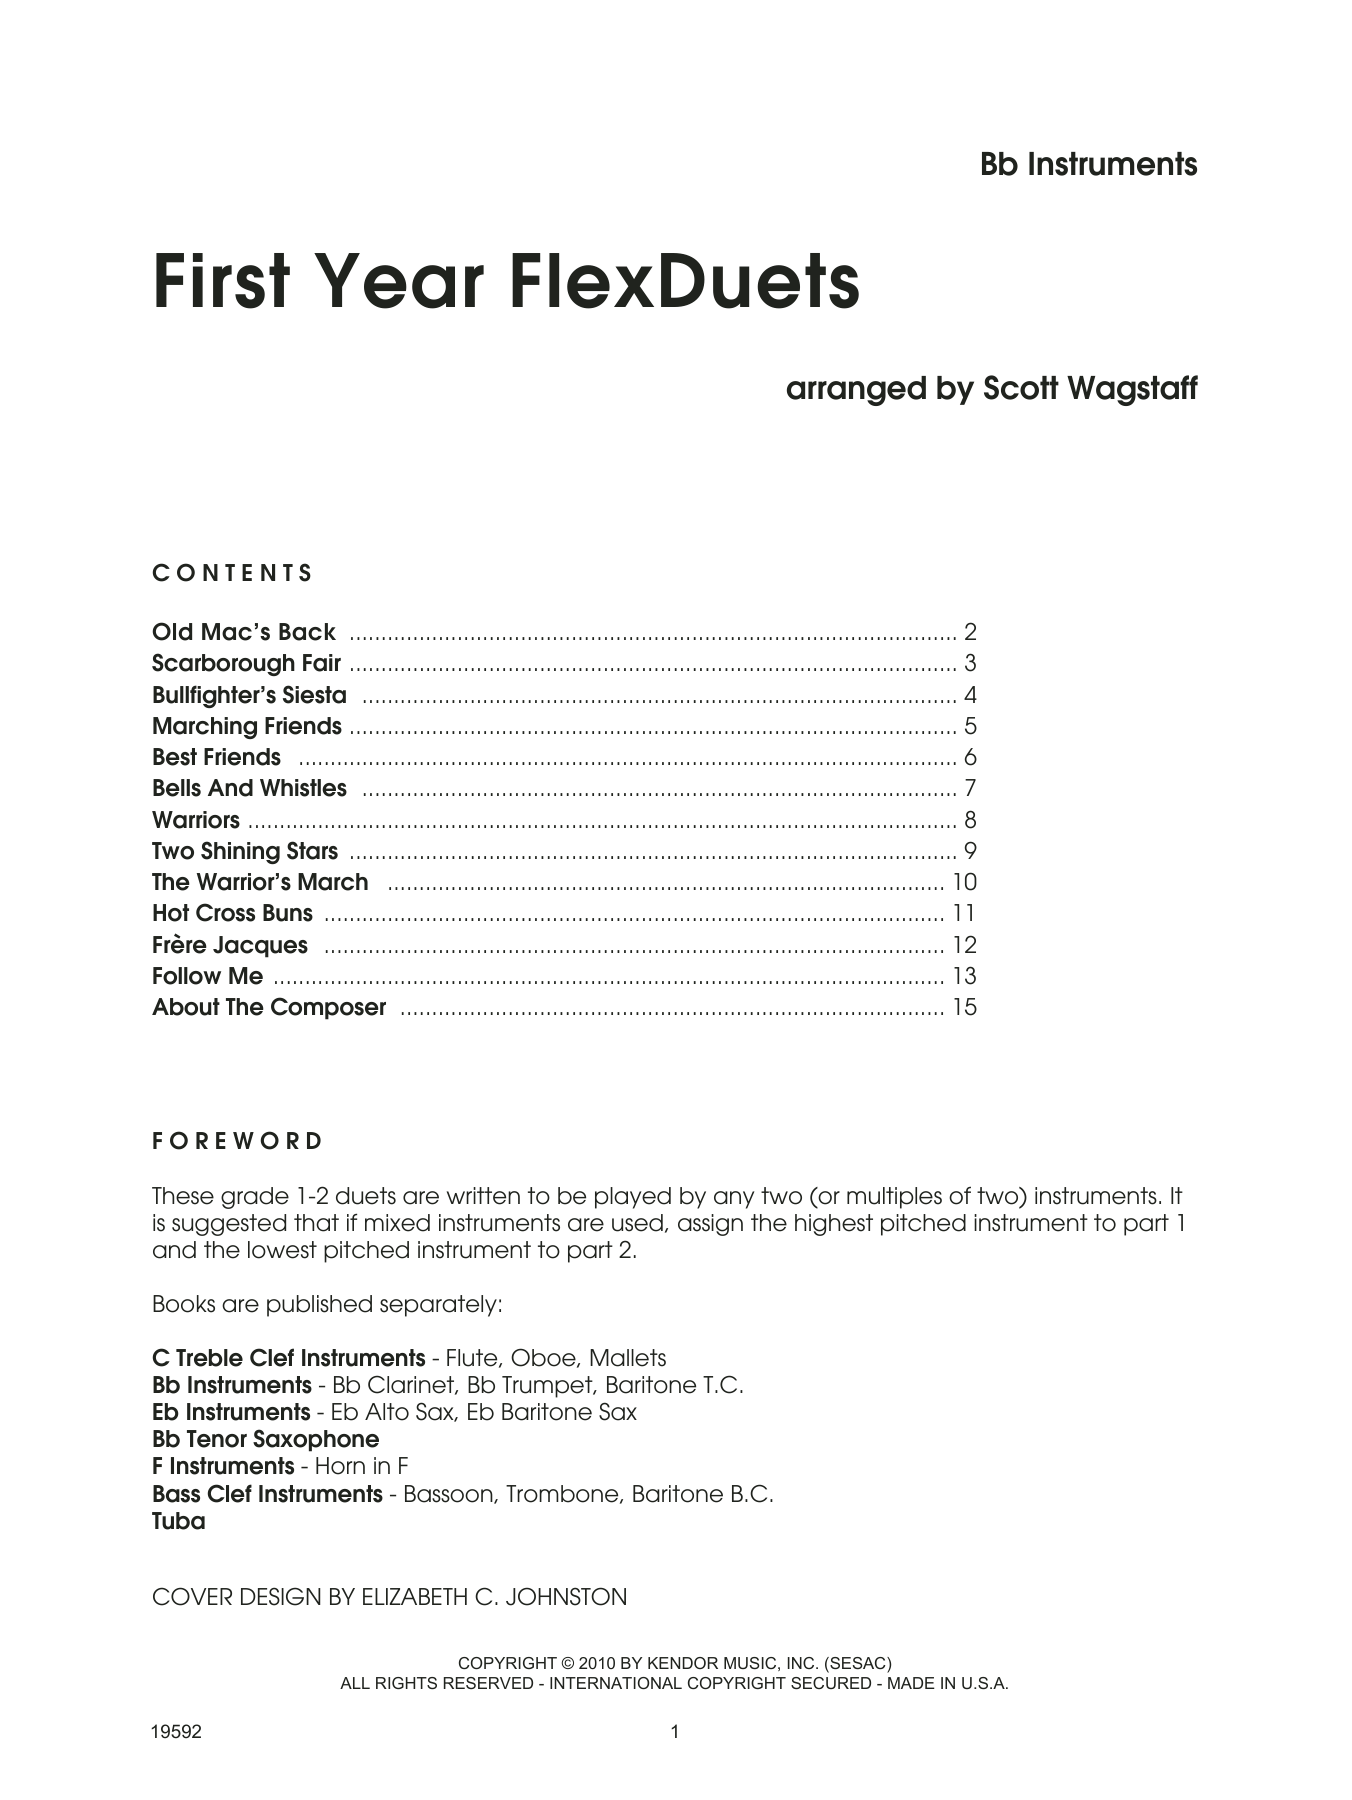 Download Scott Wagstaff First Year FlexDuets - Bb Instruments Sheet Music